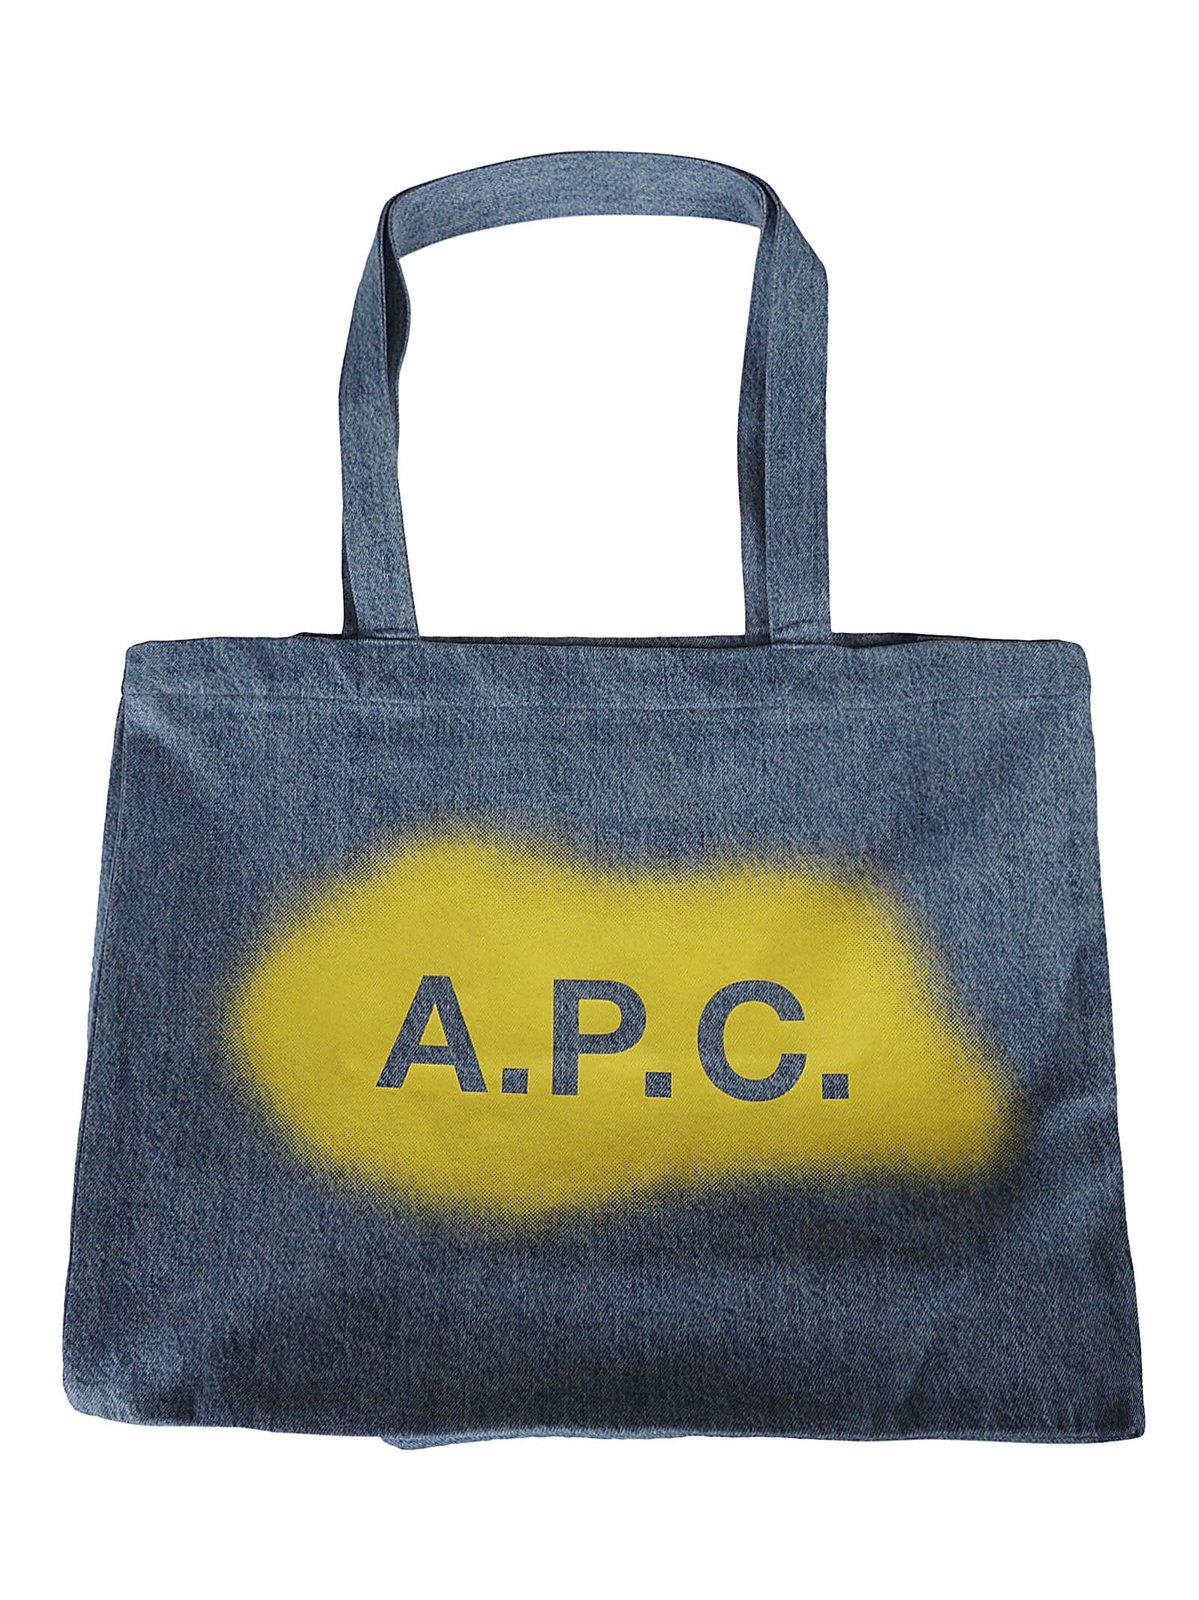 Apc Logo Printed Large Tote Bag In Light Blu